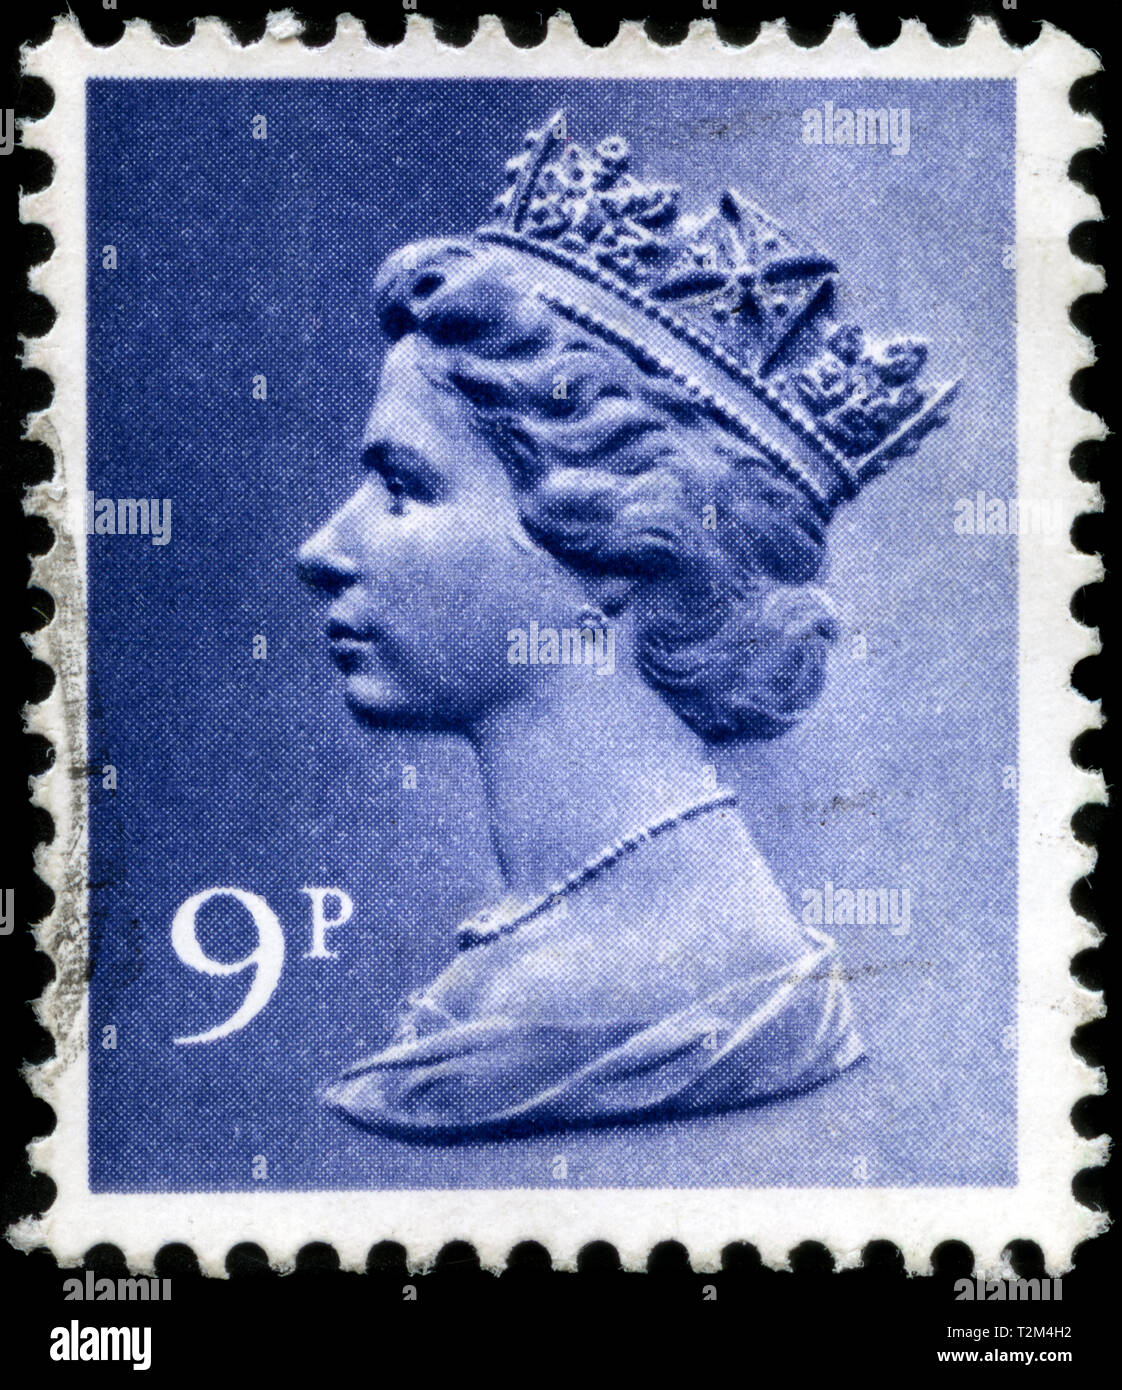 Timbre-poste du Royaume-Uni et l'Irlande du Nord dans le Queen Elizabeth II - virgule Machin - Normal Perfs série émise en 1976 Banque D'Images